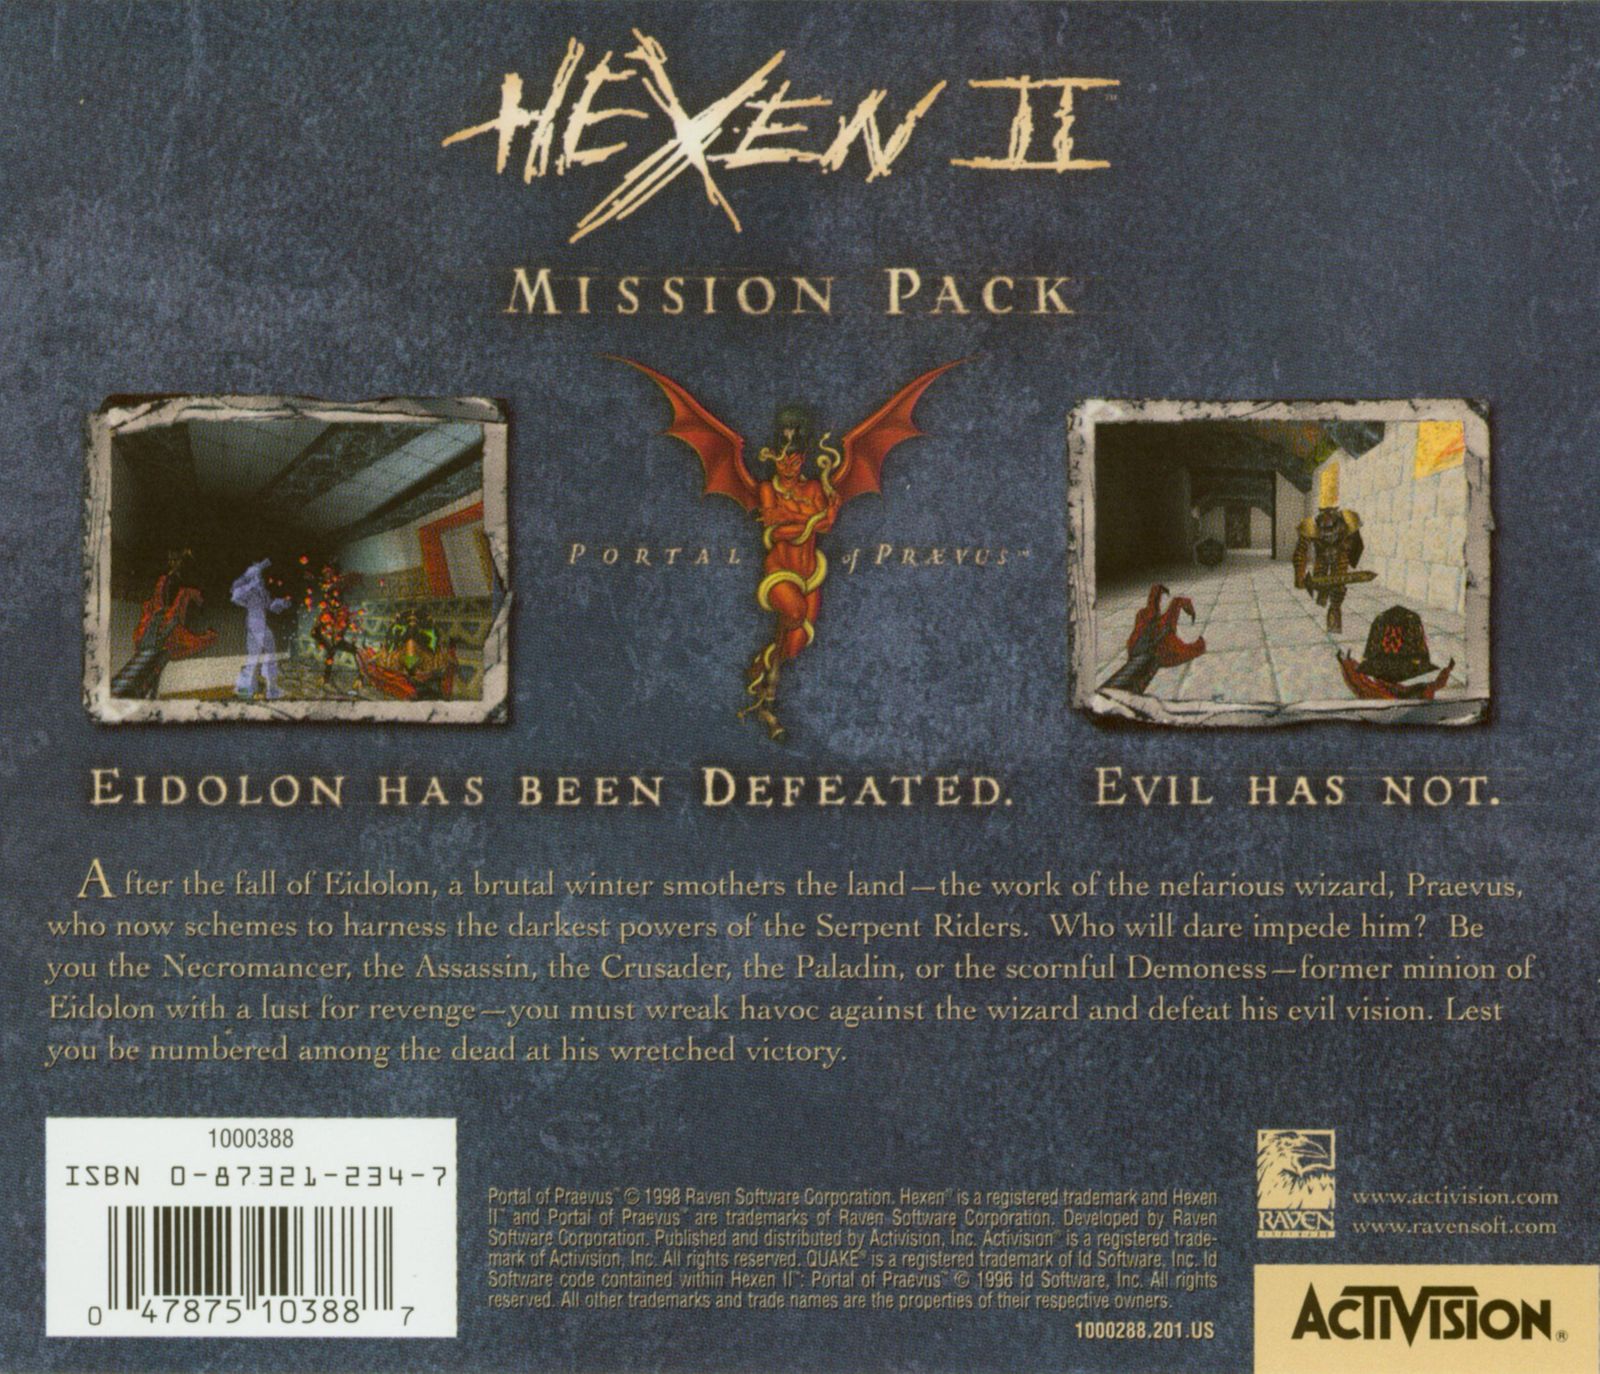 Hexen 2 mission pack portal of praevus фото 1